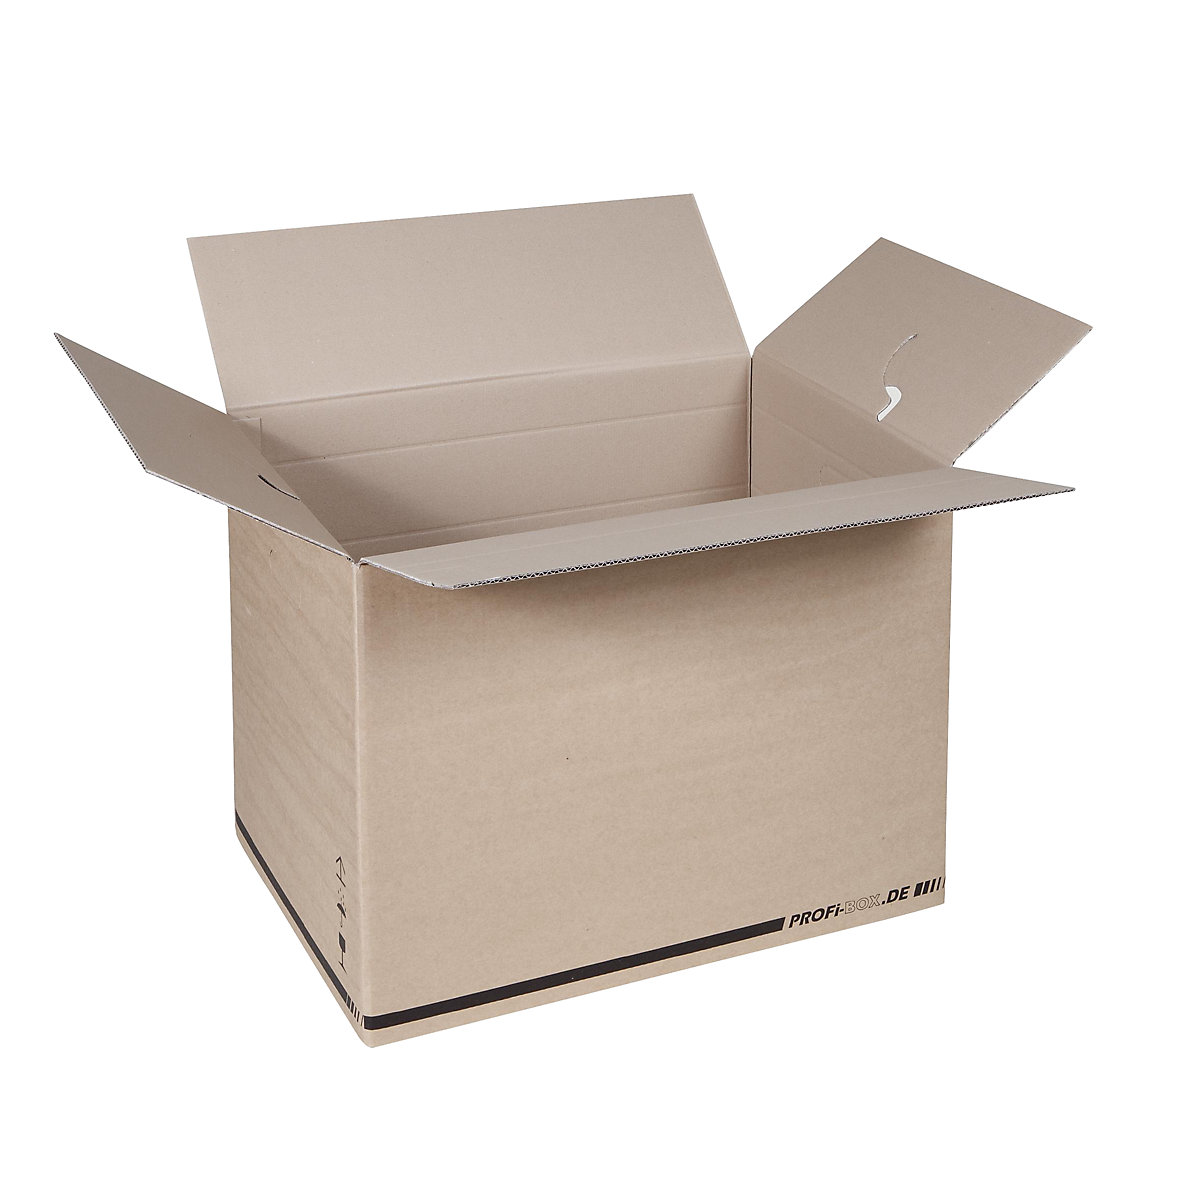 Profi box, z 2-vlnitej lepenky, vnútorné rozmery 574 x 376 x 418 mm, FEFCO 0216, OJ 50 ks-1